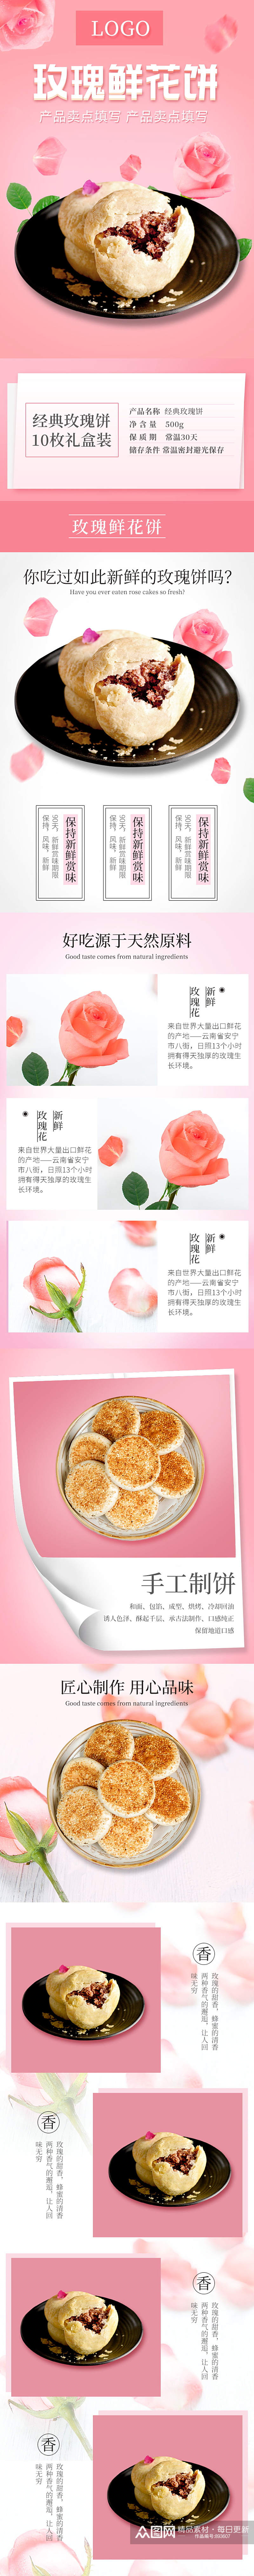 玫瑰鲜花饼淘宝天猫详情页素材